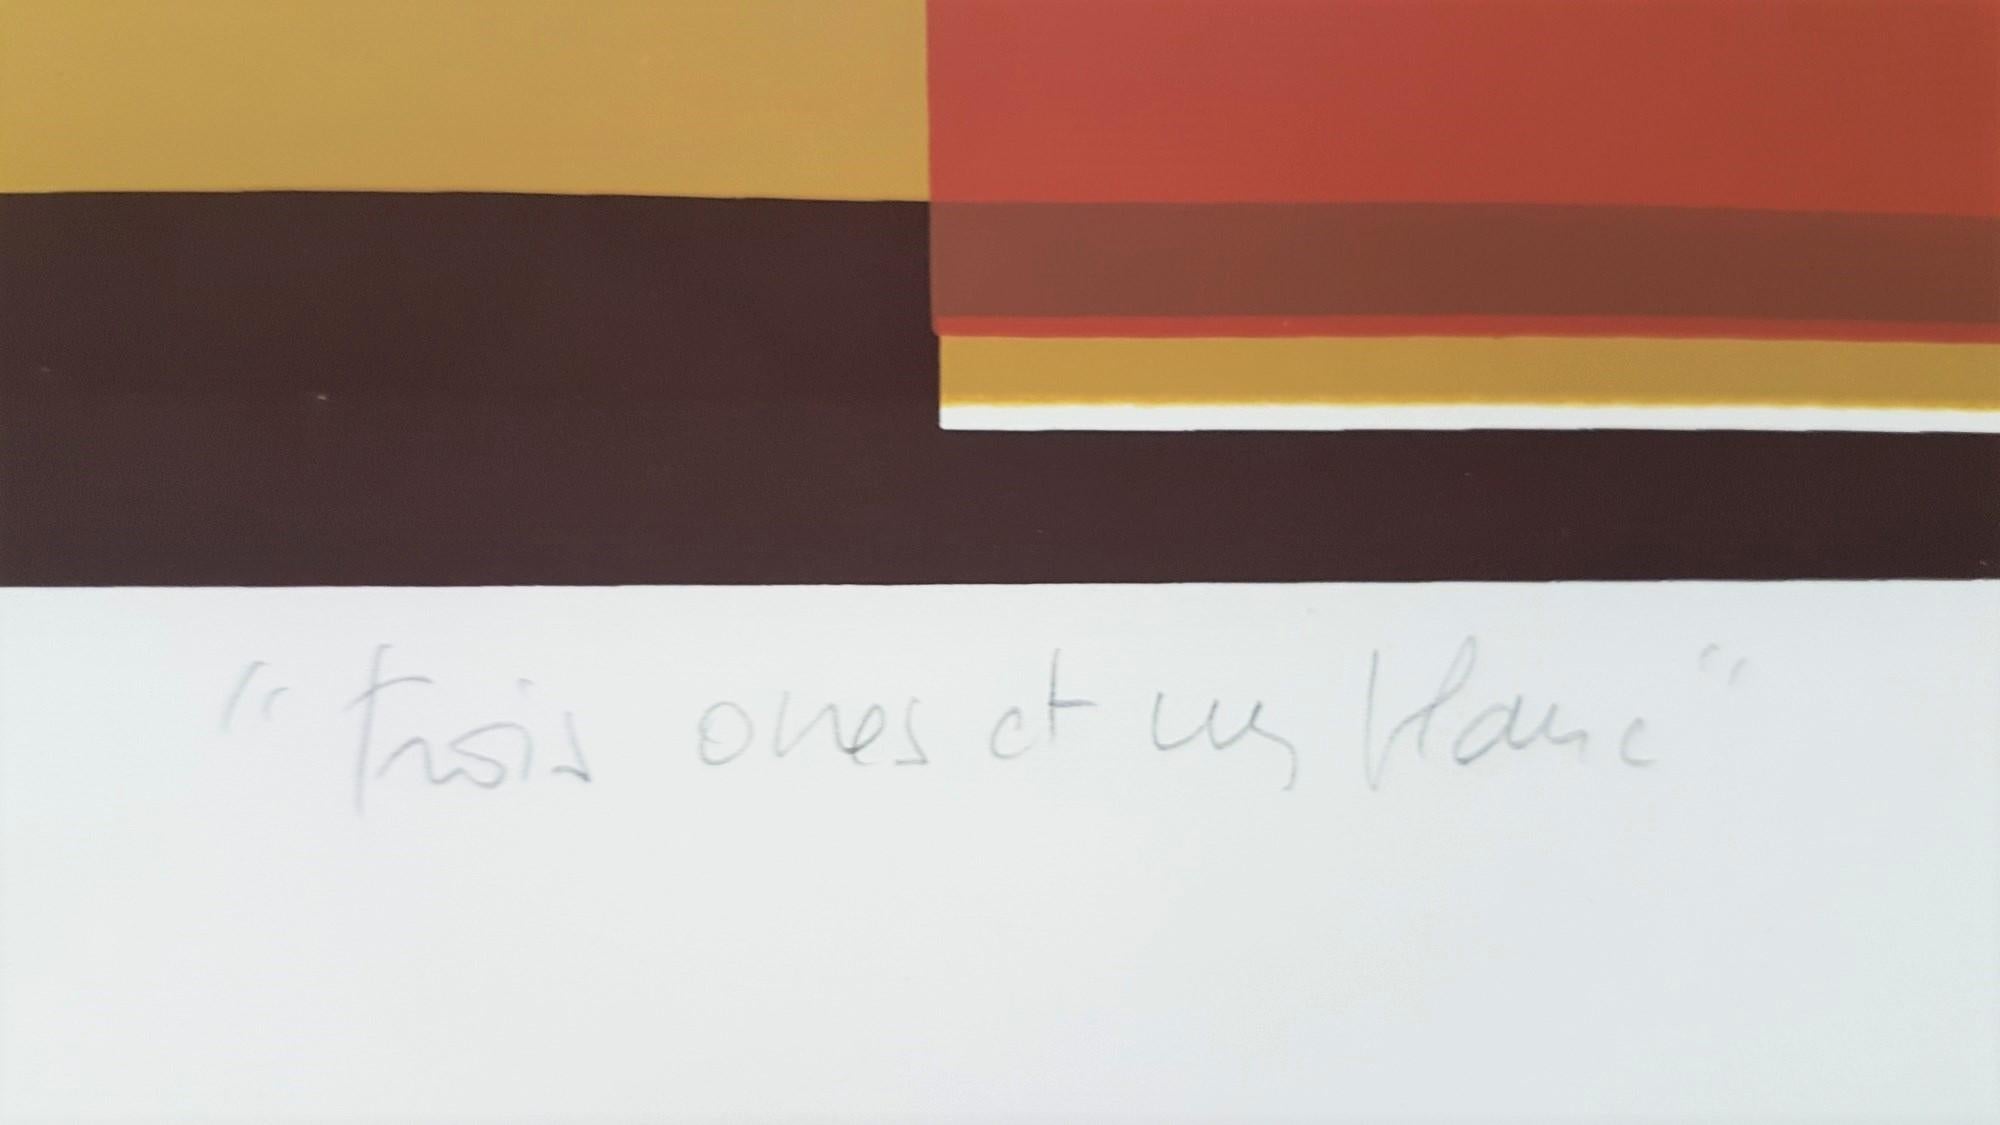 Marie Therese Vacossin
Geometrische Komposition
Medium: Farb-Siebdruck
Jahr: 1979
Signiert, datiert, betitelt, nummeriert oder beschriftet
Auflage: 10
Größe: 8,2 × 8,2 auf 14,0 × 13,3 Zoll 
COA bereitgestellt

Marie-Thérèse Vacossin ist eine